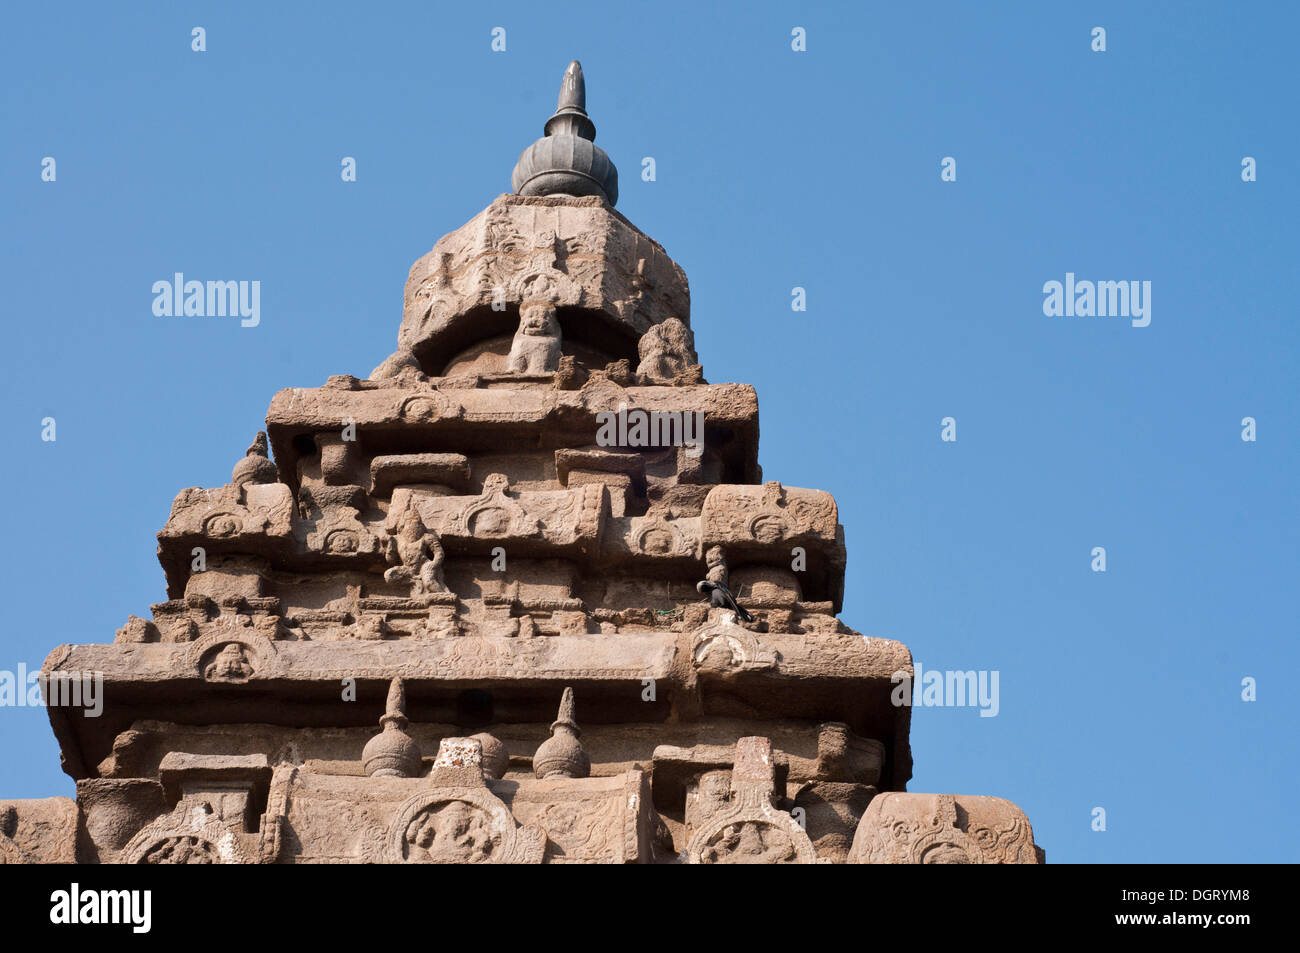 Shore tempio di Mahabalipuram, Mamallapuram, Mahabalipuram, Tamil Nadu, India Foto Stock